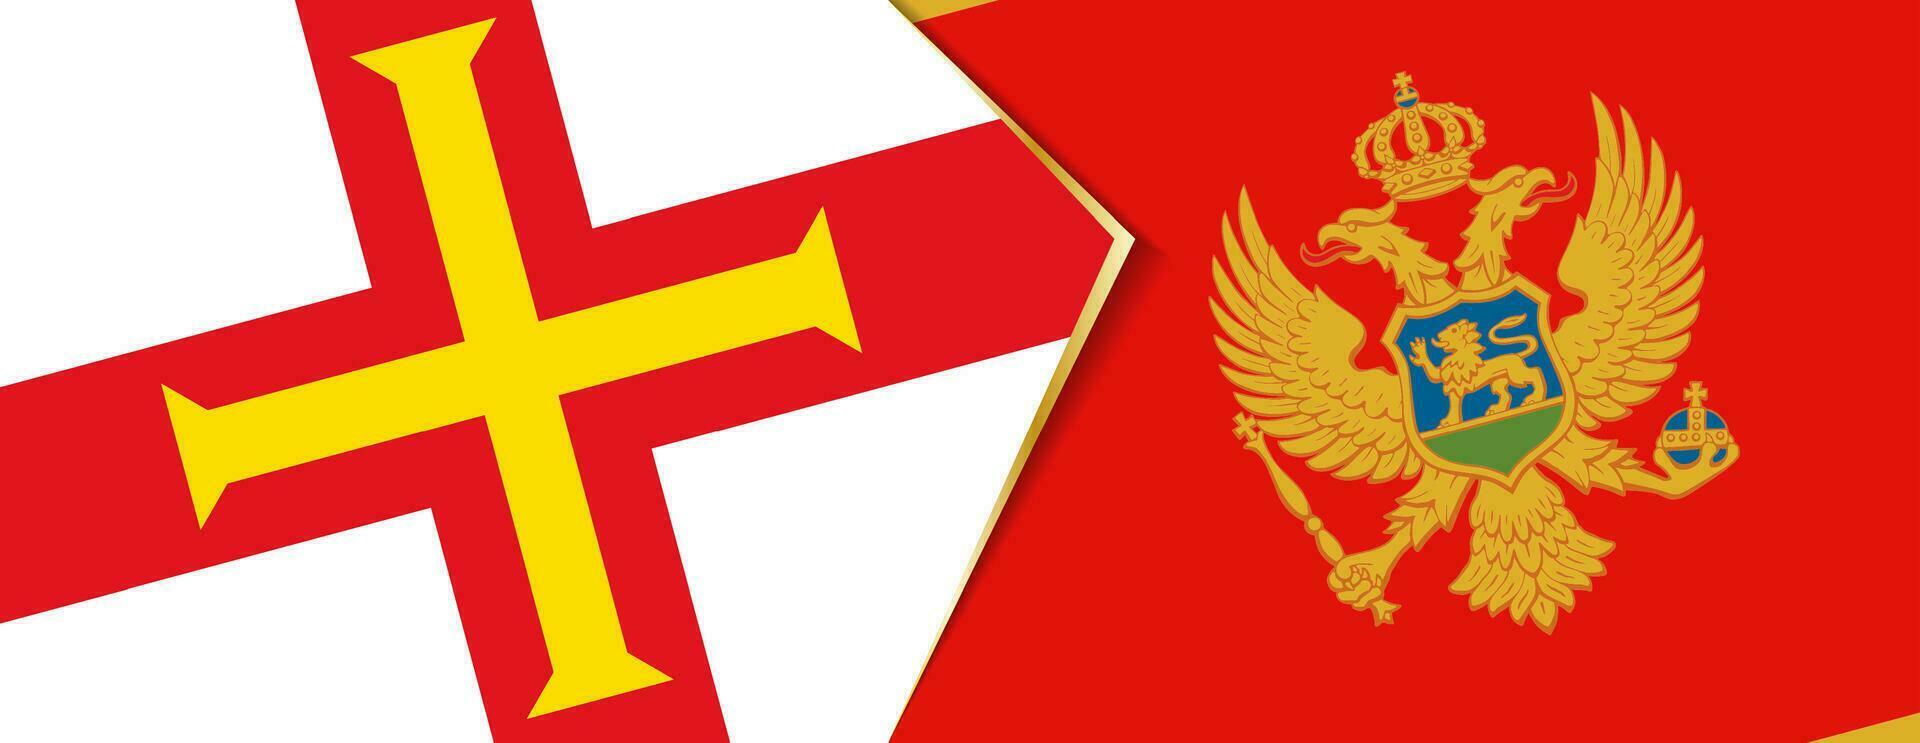 guernsey y montenegro banderas, dos vector banderas